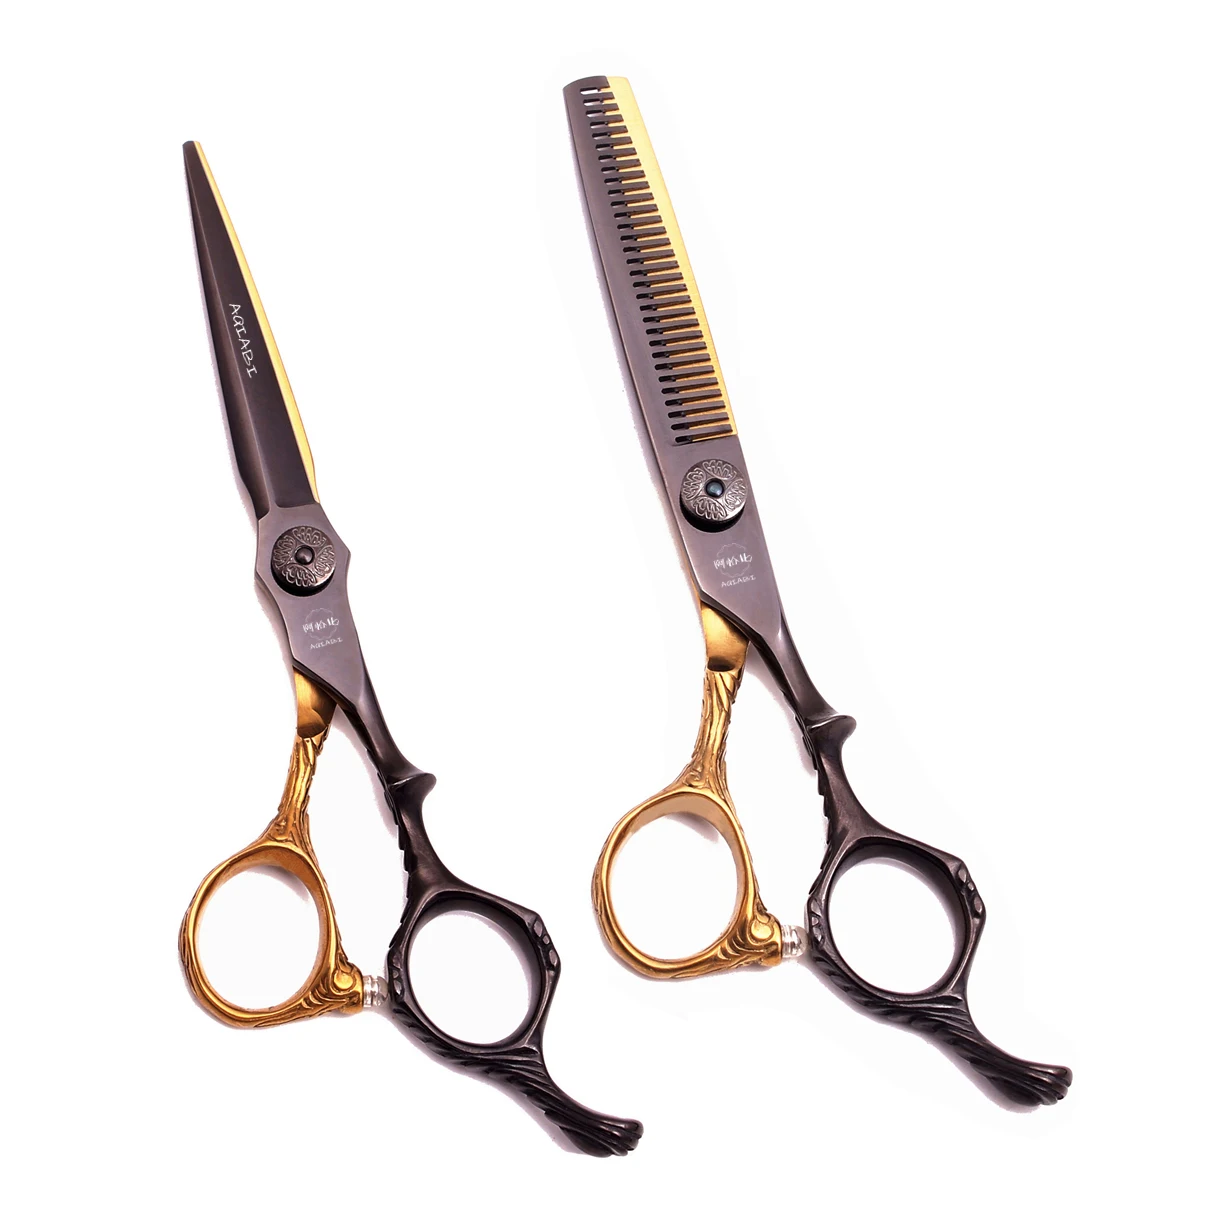 

Парикмахерские ножницы для стрижки волос A9026, профессиональные 6,0 дюйма, японские фирменные ножницы 440C AQIABI, инструмент для красоты и укладки...